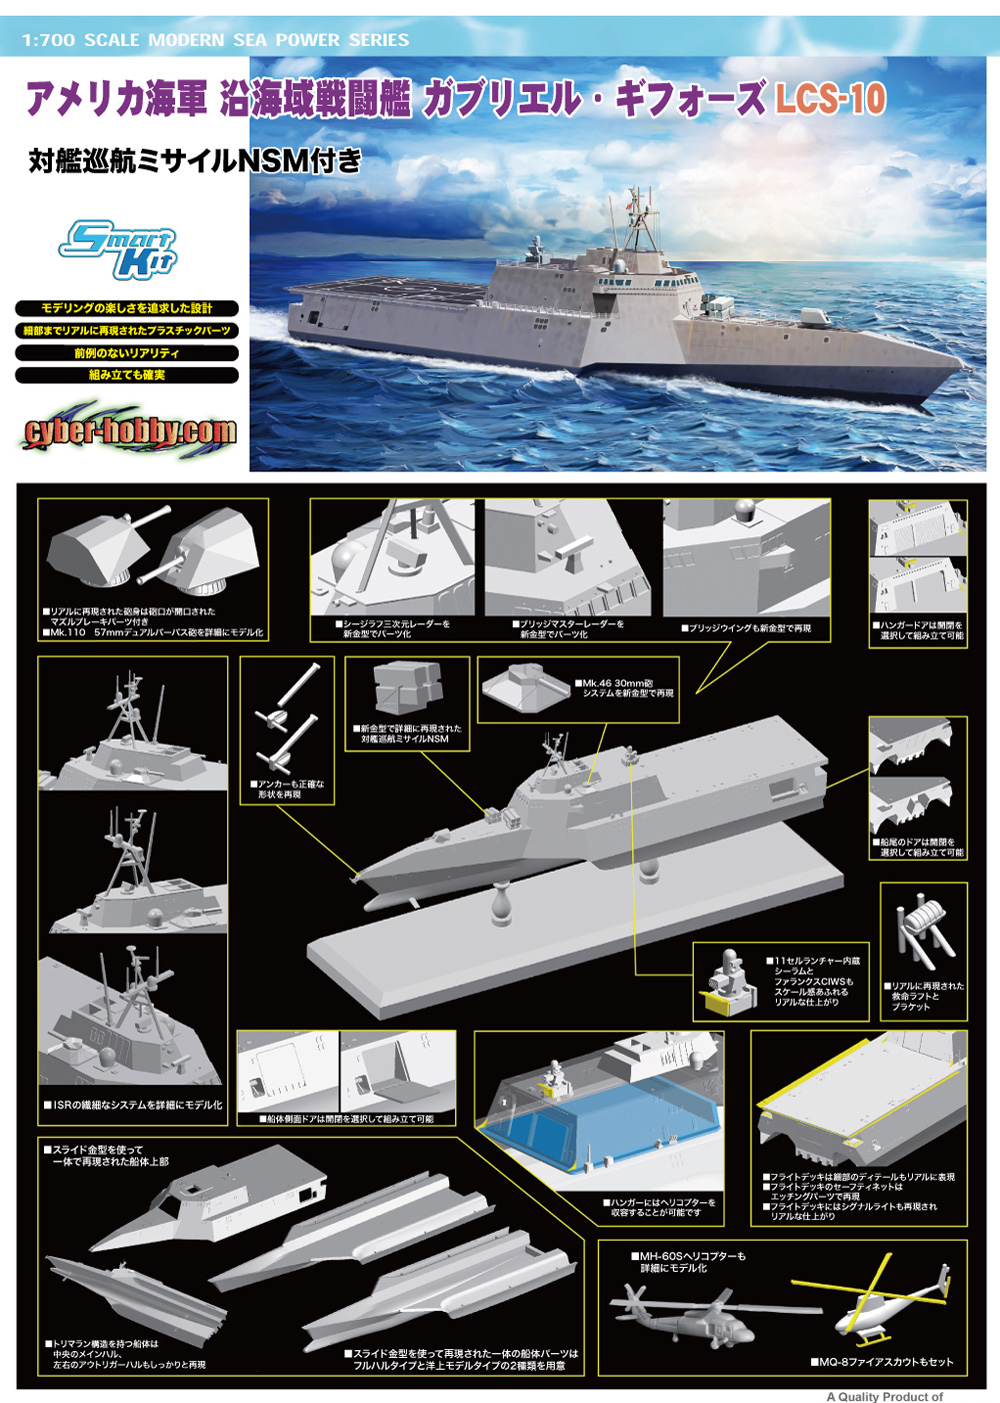 アメリカ海軍 沿海域戦闘艦 ガブリエル・ギフォーズ LCS-10 w/対艦巡航ミサイル(NSM) プラモデル (サイバーホビー 1/700 Modern Sea Power Series No.7147) 商品画像_2